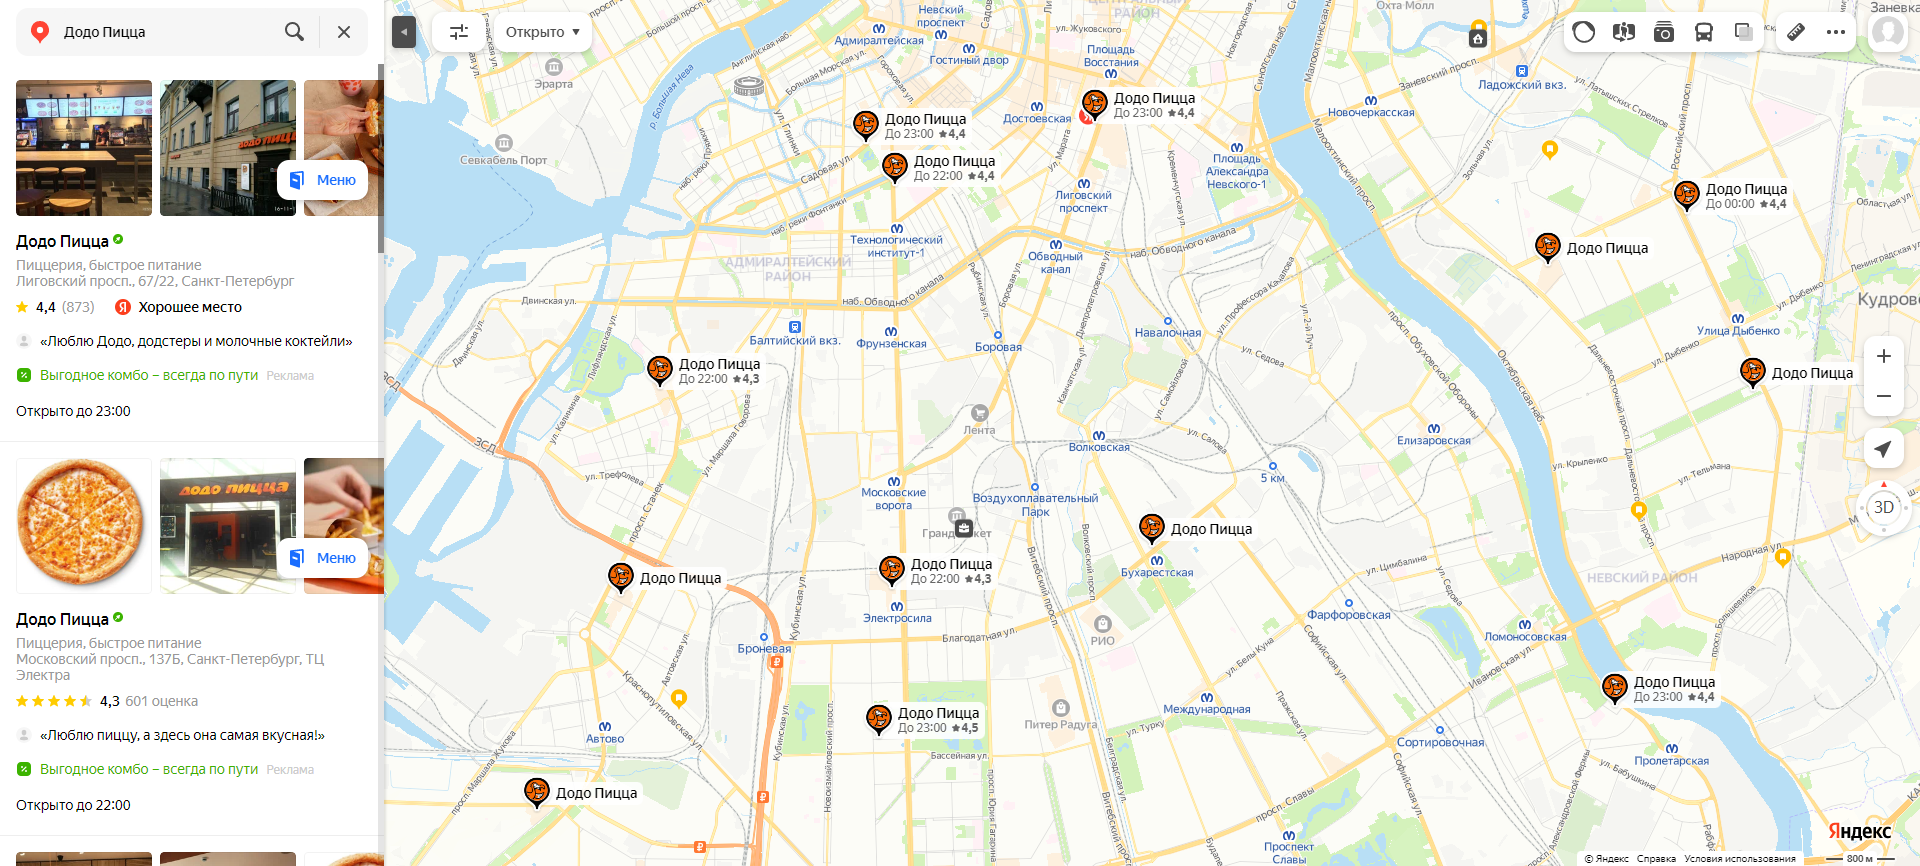 Брендированное размещение в Яндекс Картах